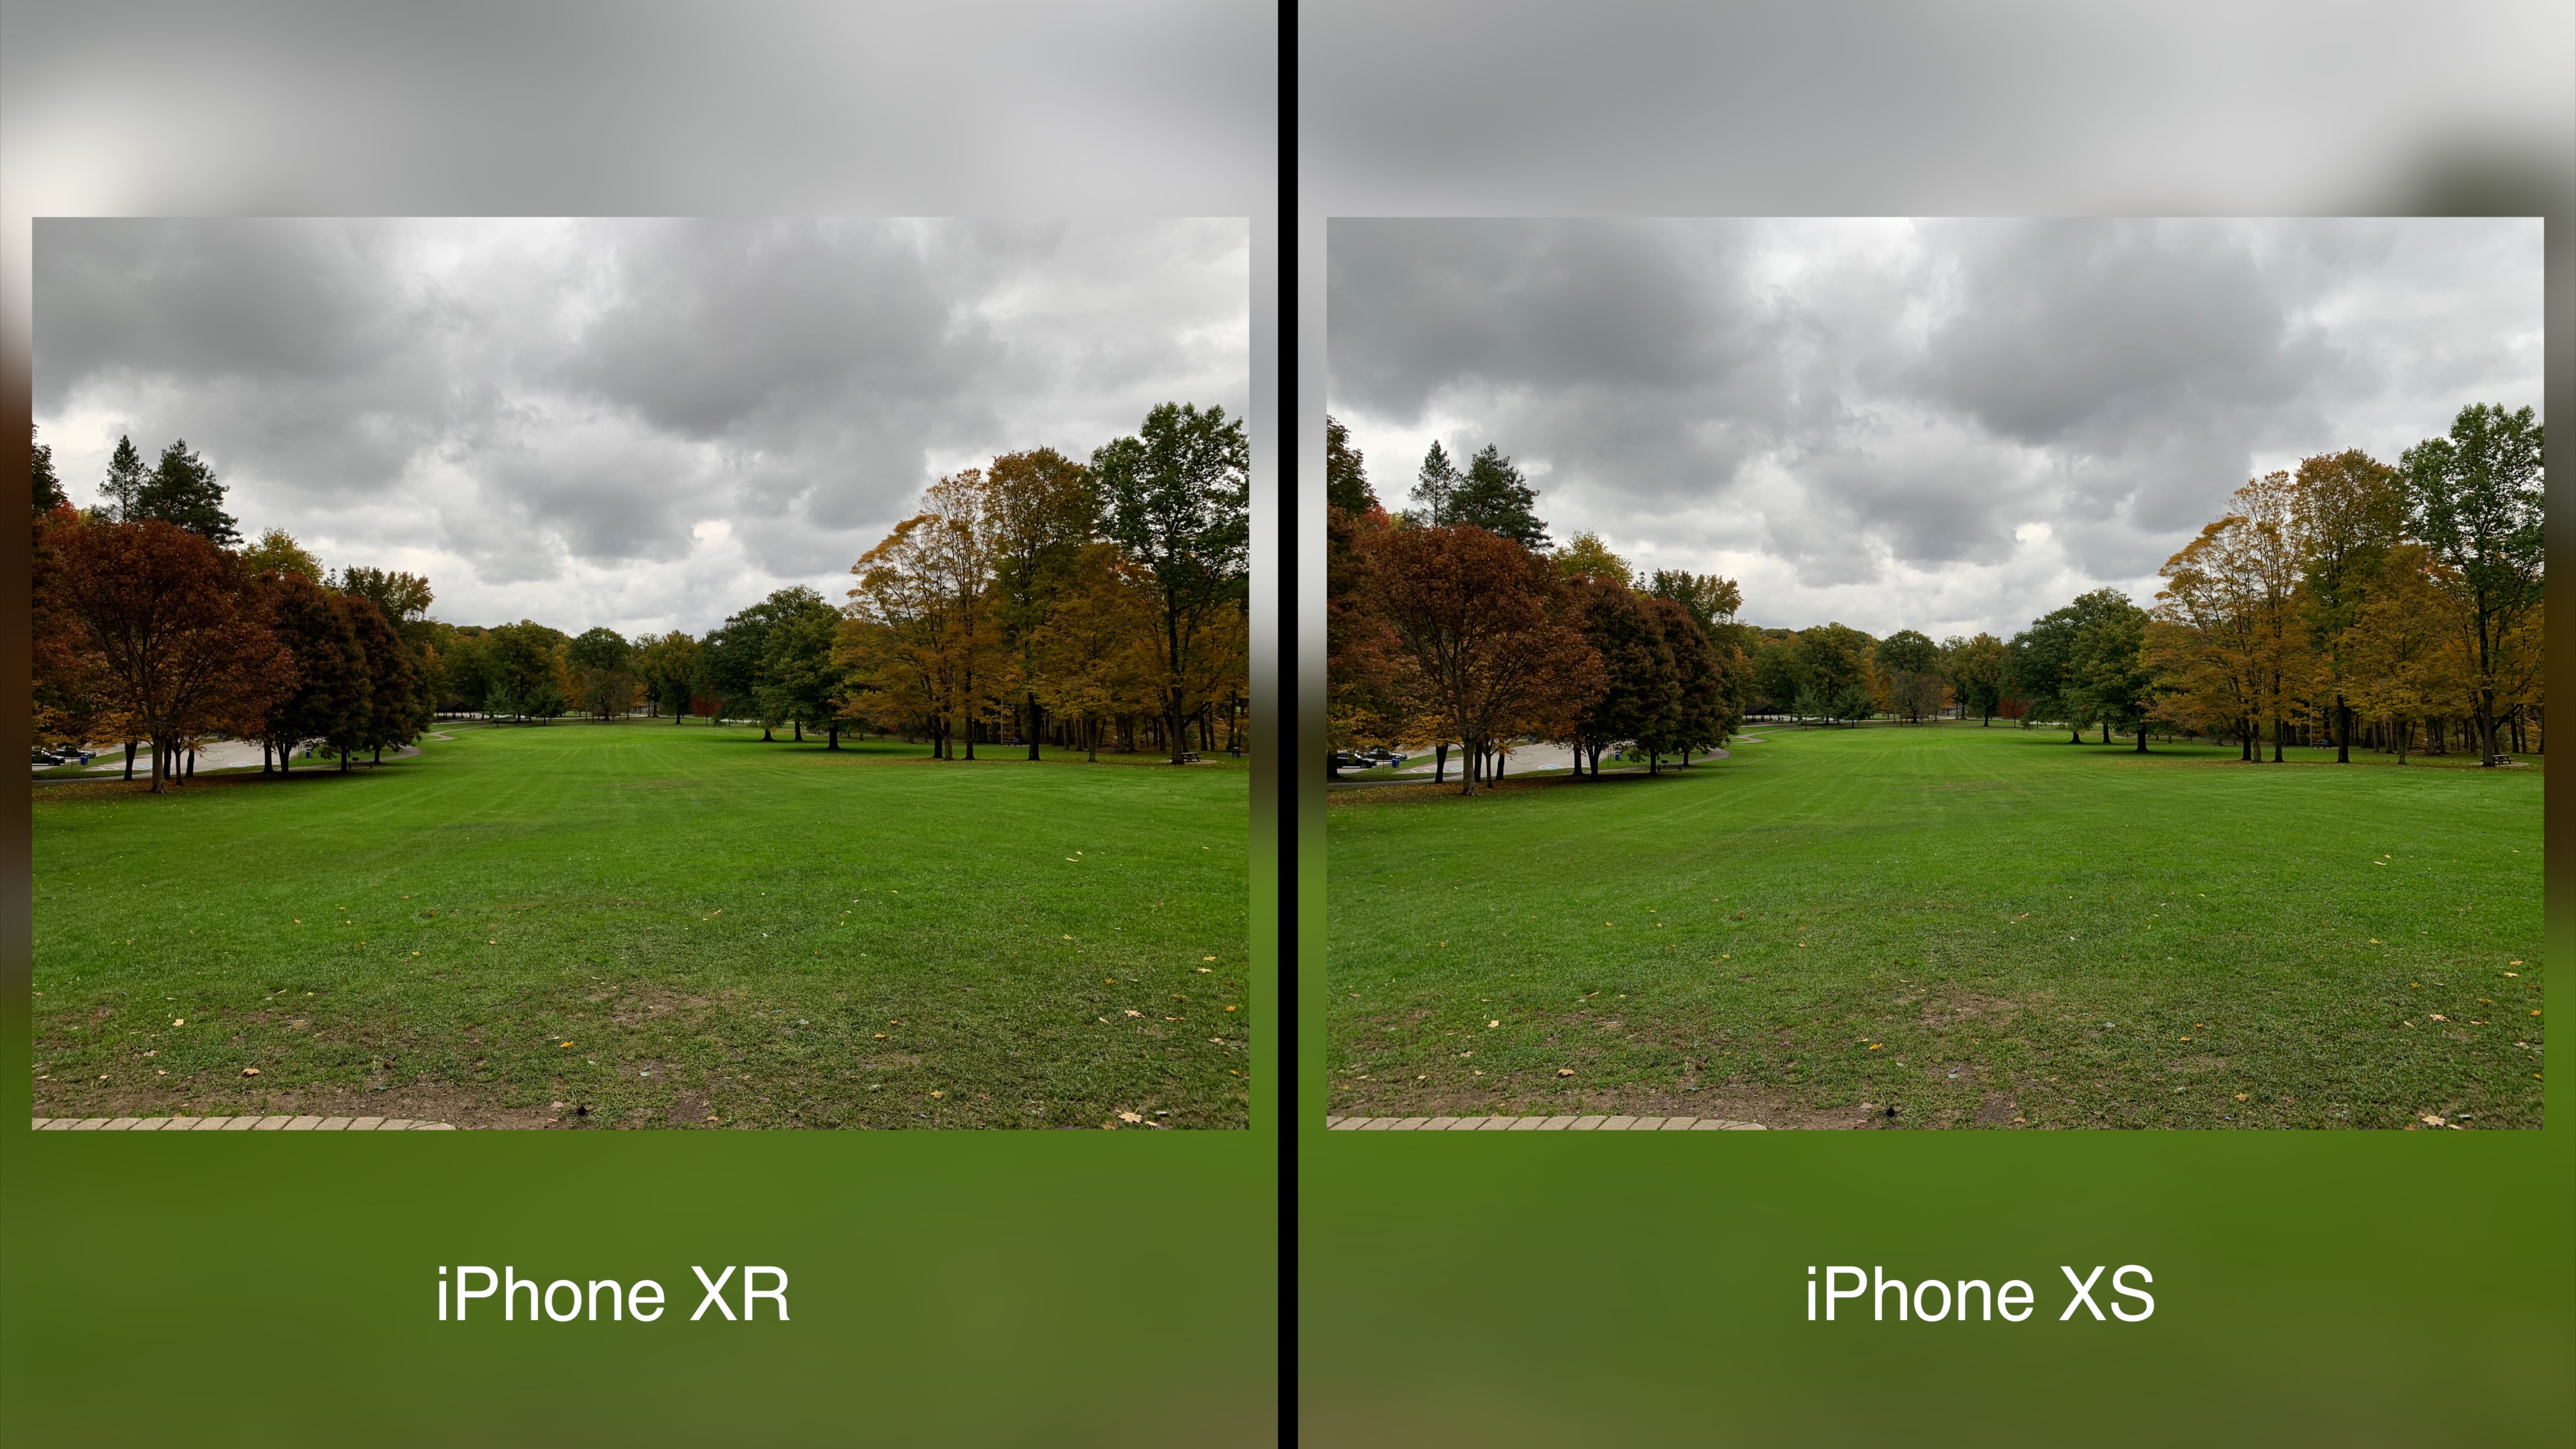 iPhone Xs vs iPhone XR kamera özellikleri karşılaştırması